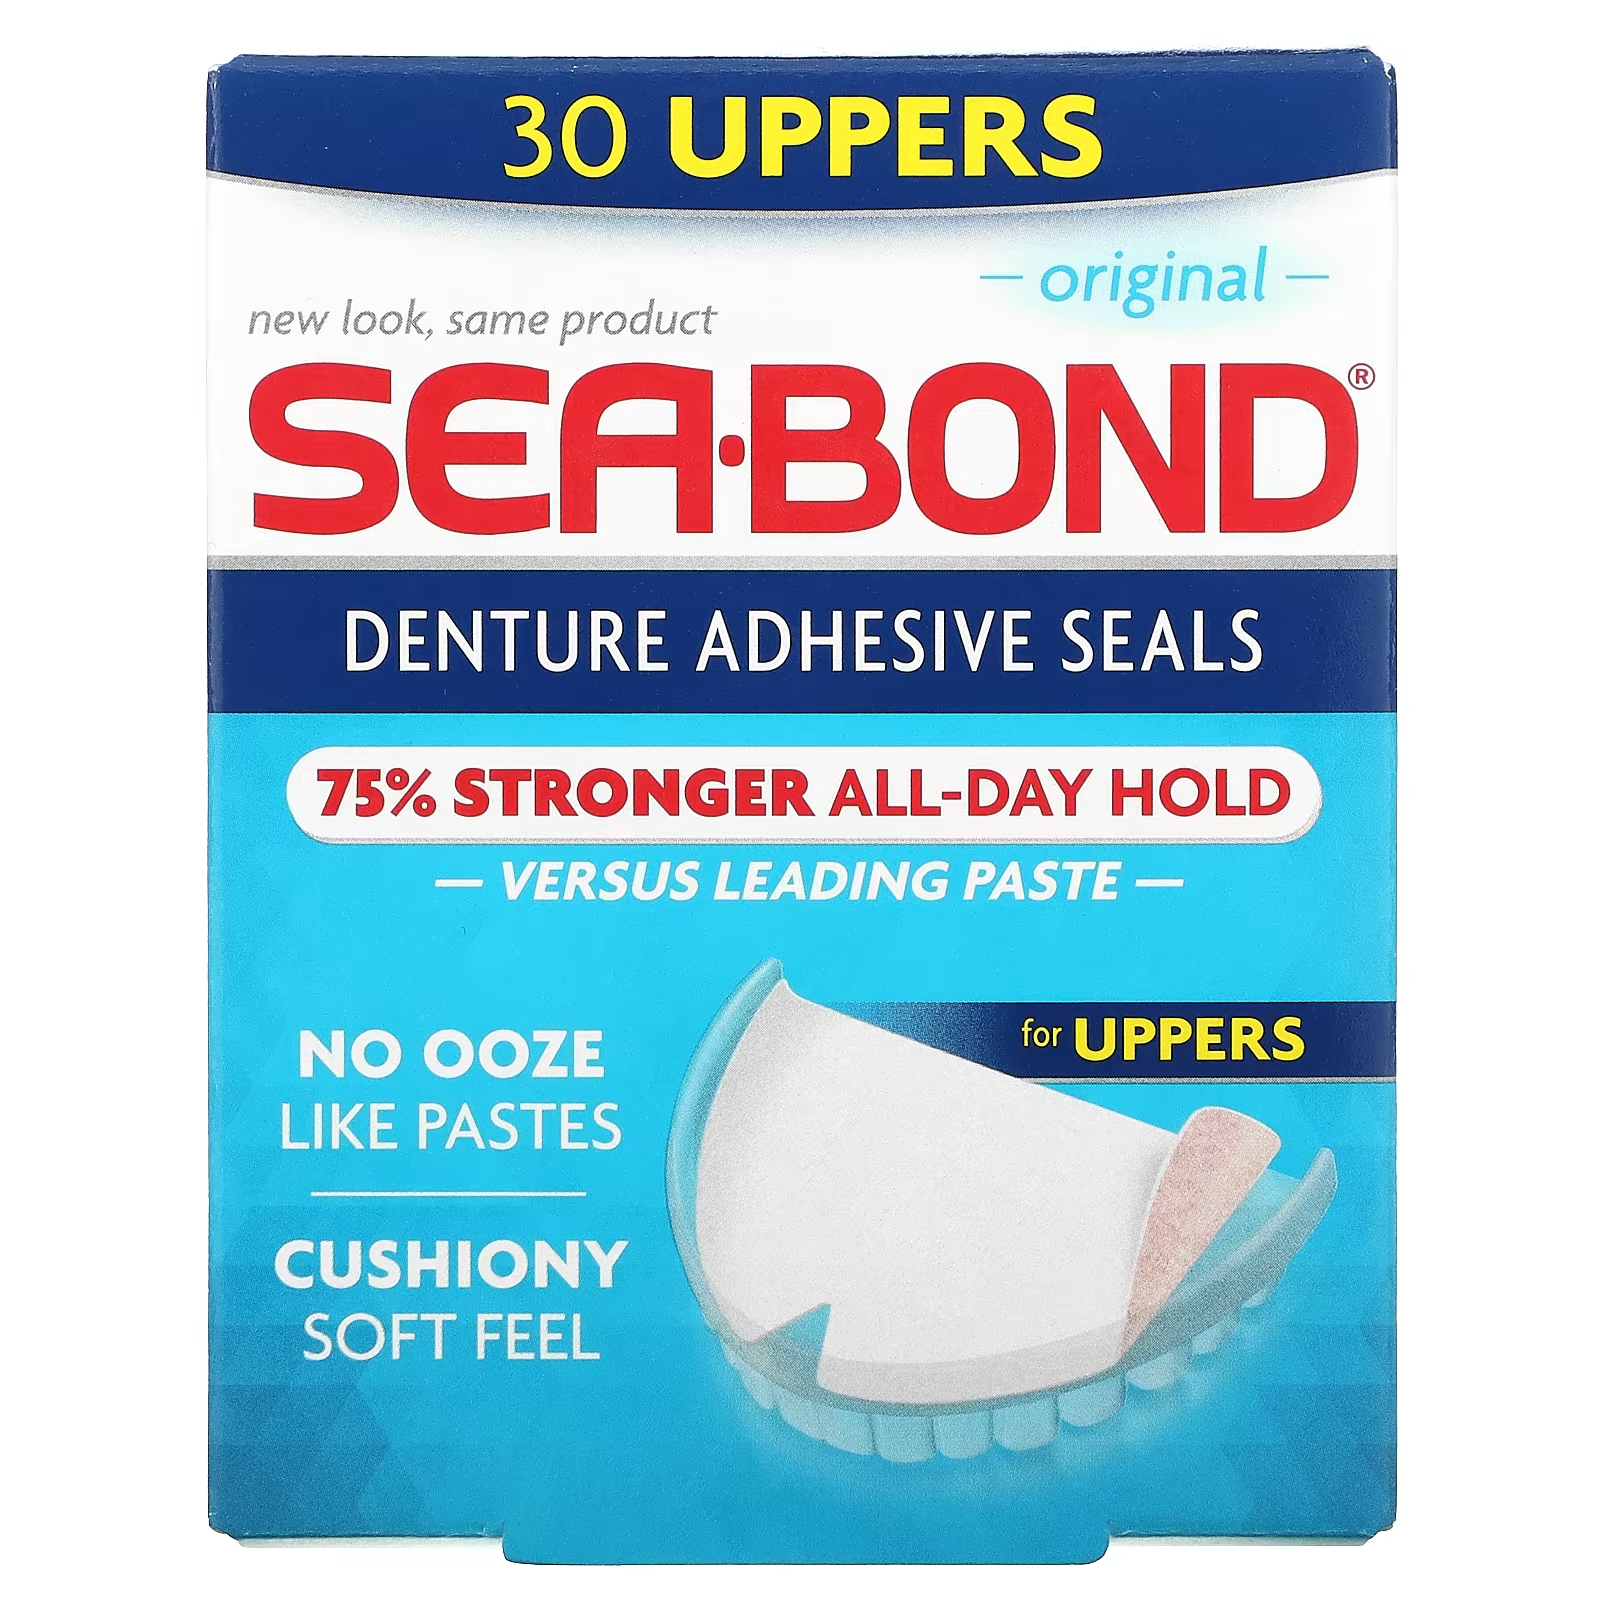 Клейкие пломбы Original 30 Uppers SeaBond для зубных протезов